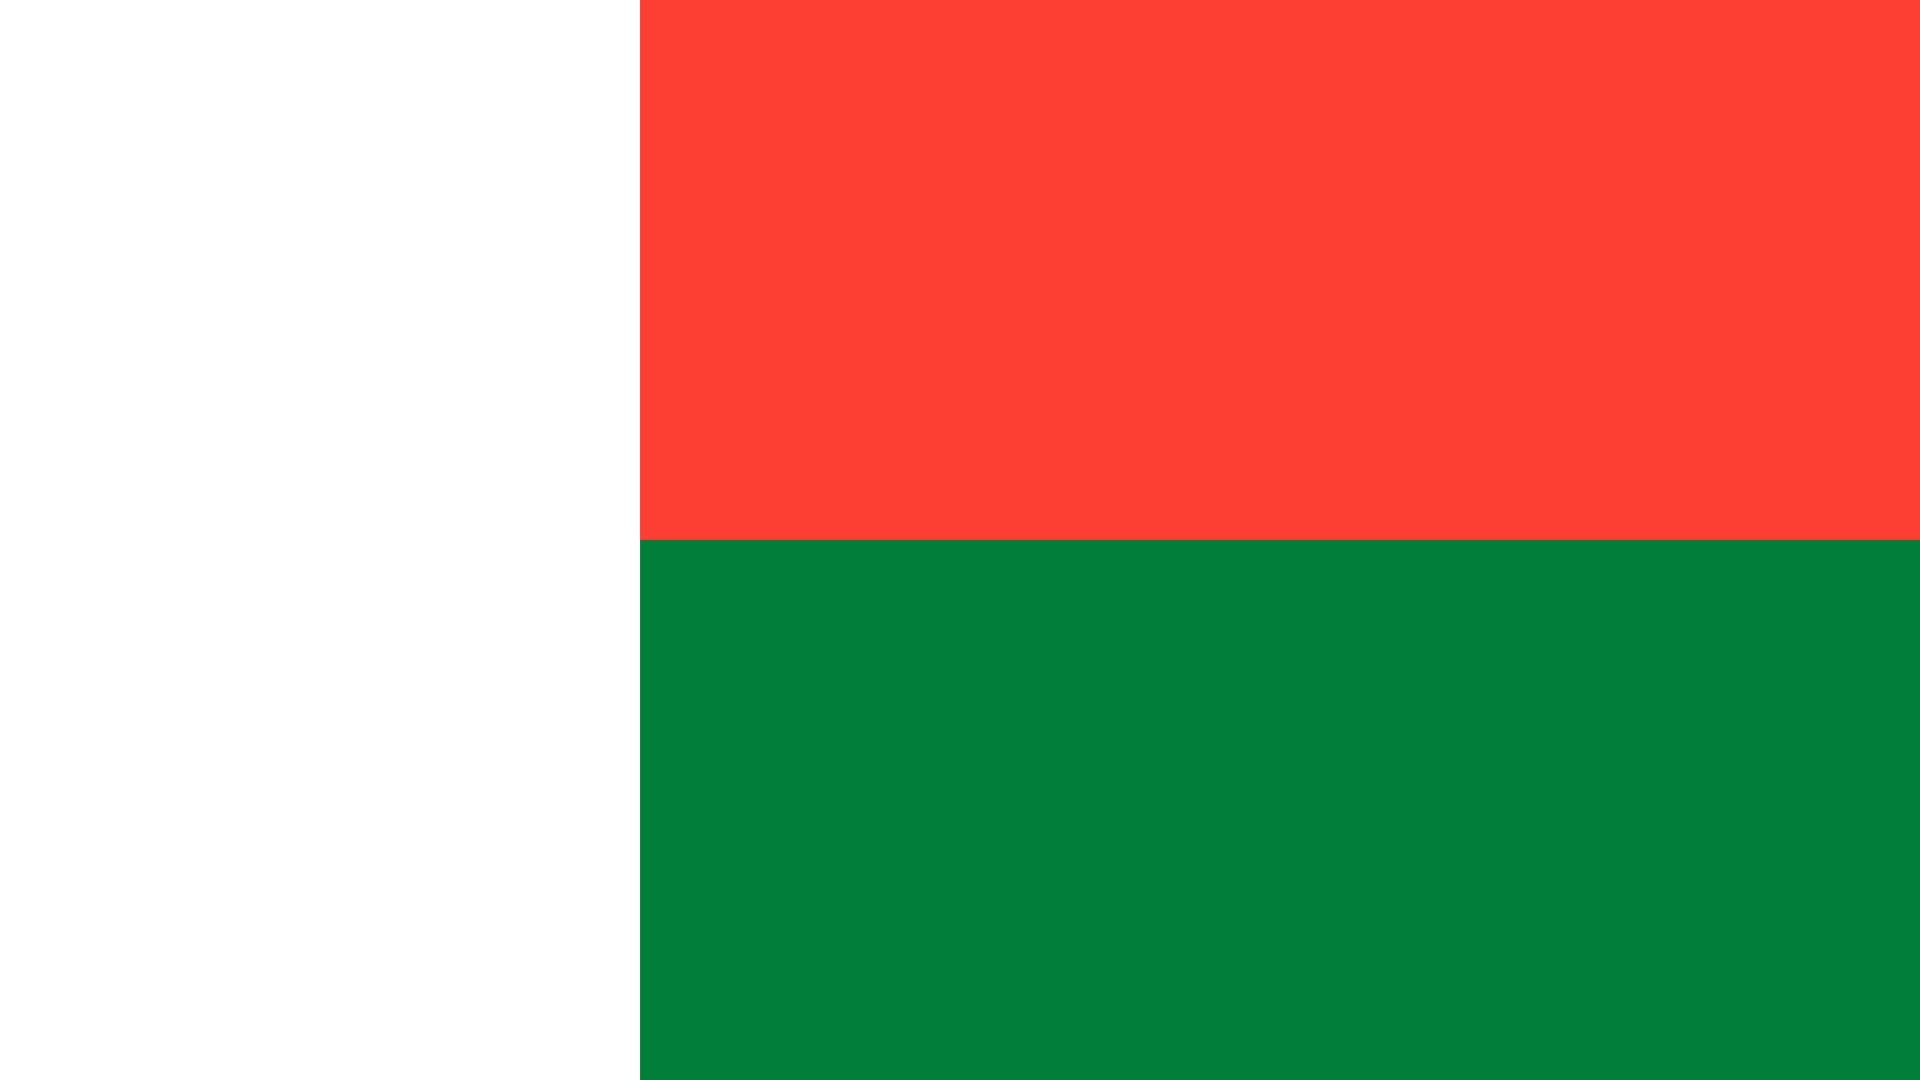 A bandeira consiste de três campos de igual área e proporções, nas cores vermelho, verde e branco, dispostos verticalmente.